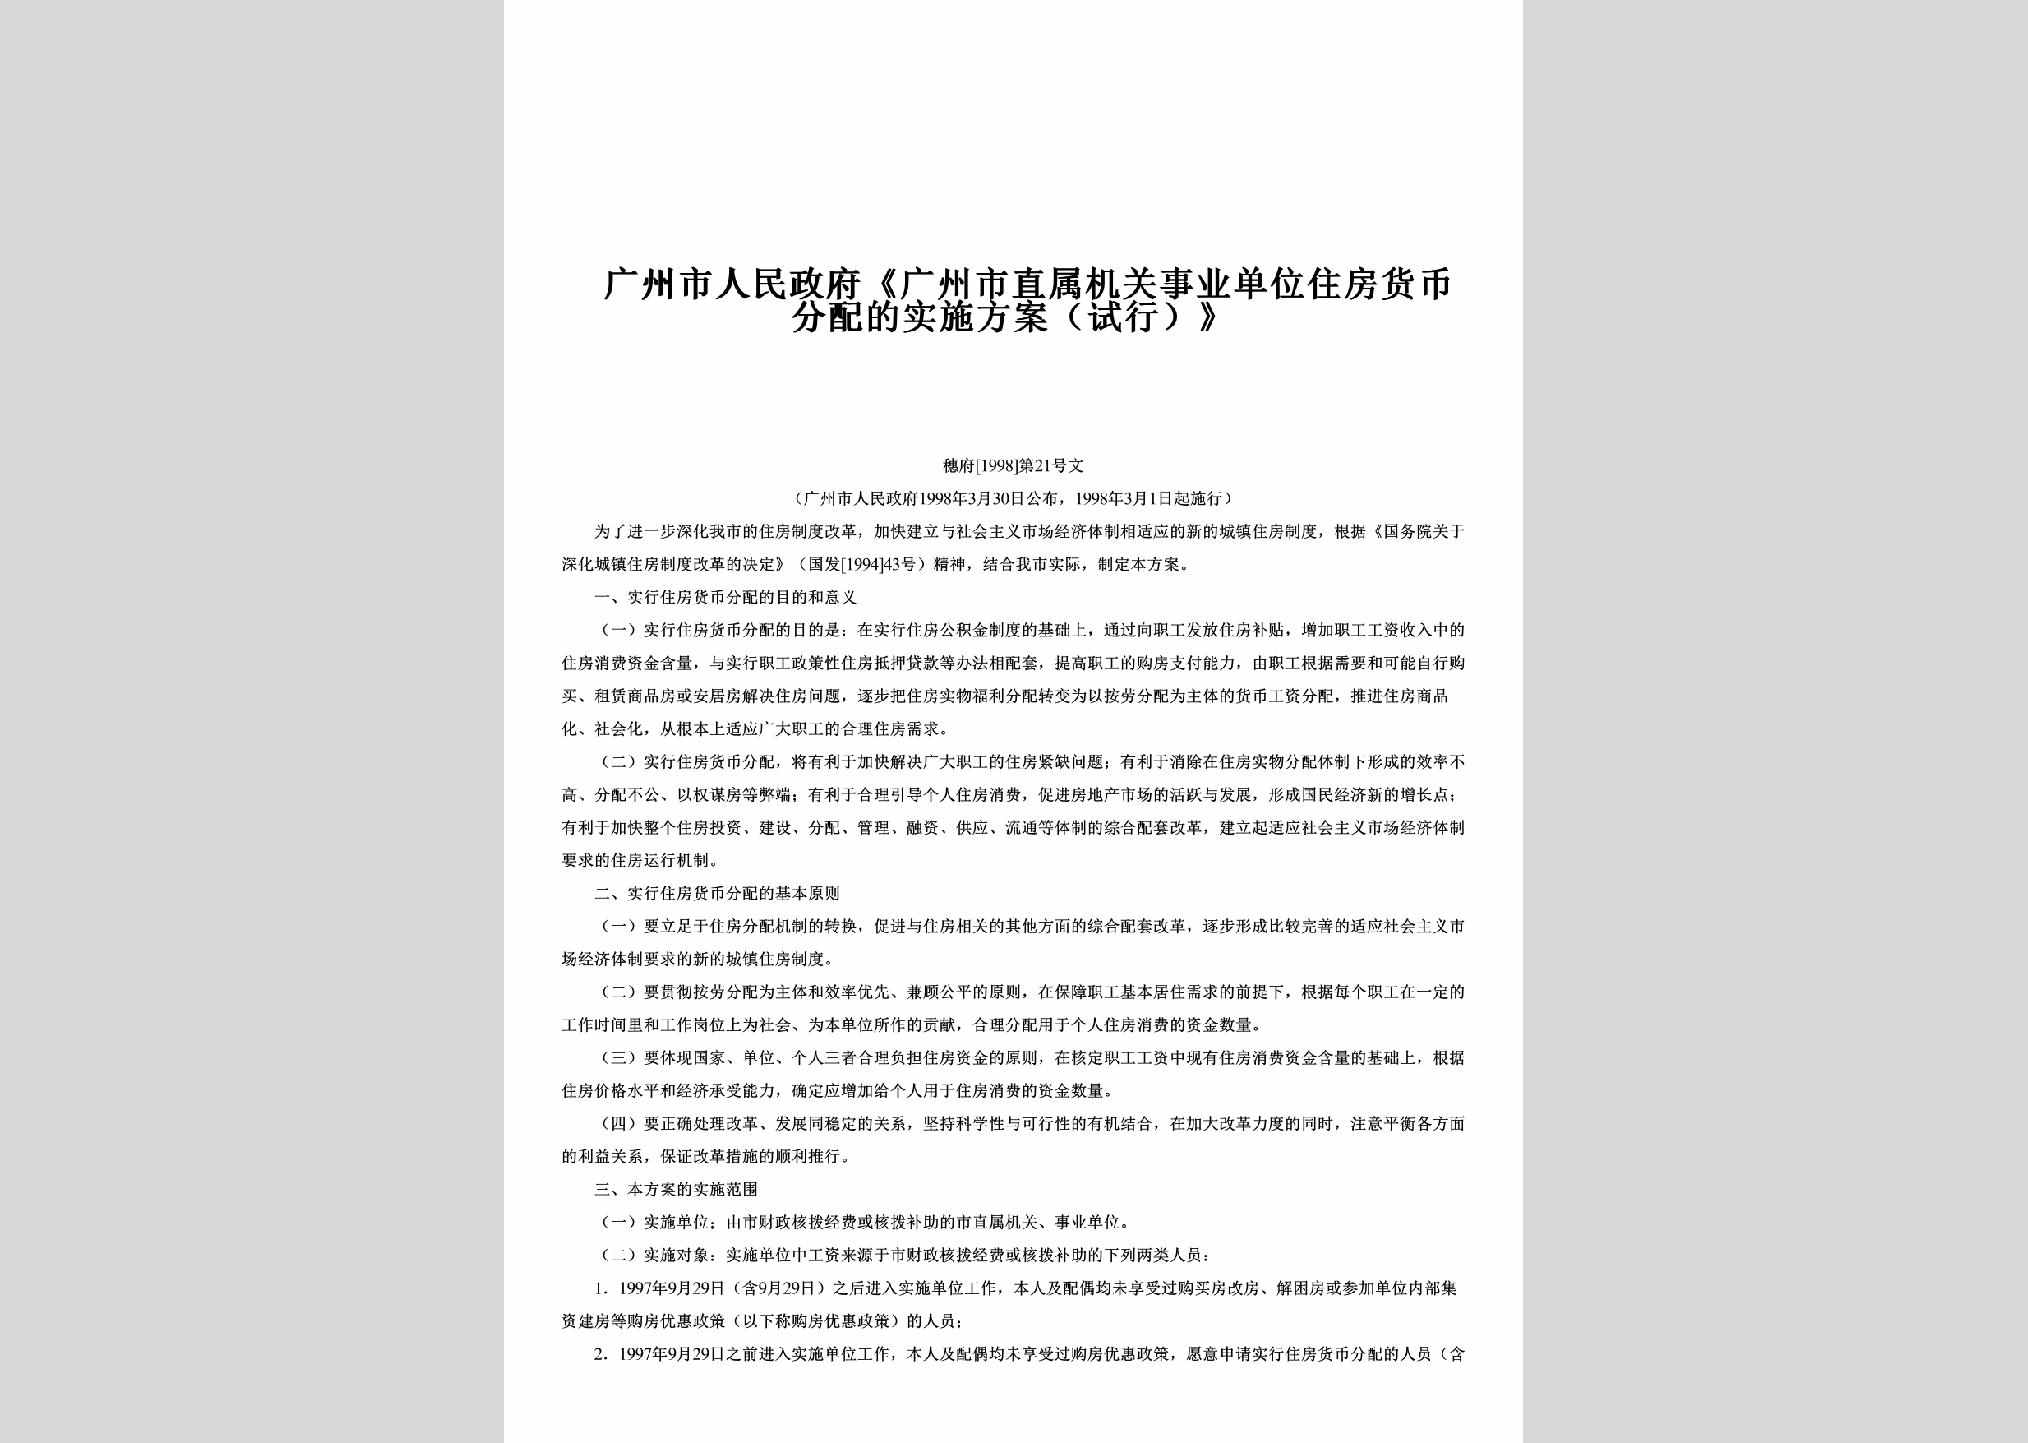 穗府[1998]21号：《广州市直属机关事业单位住房货币分配的实施方案（试行）》